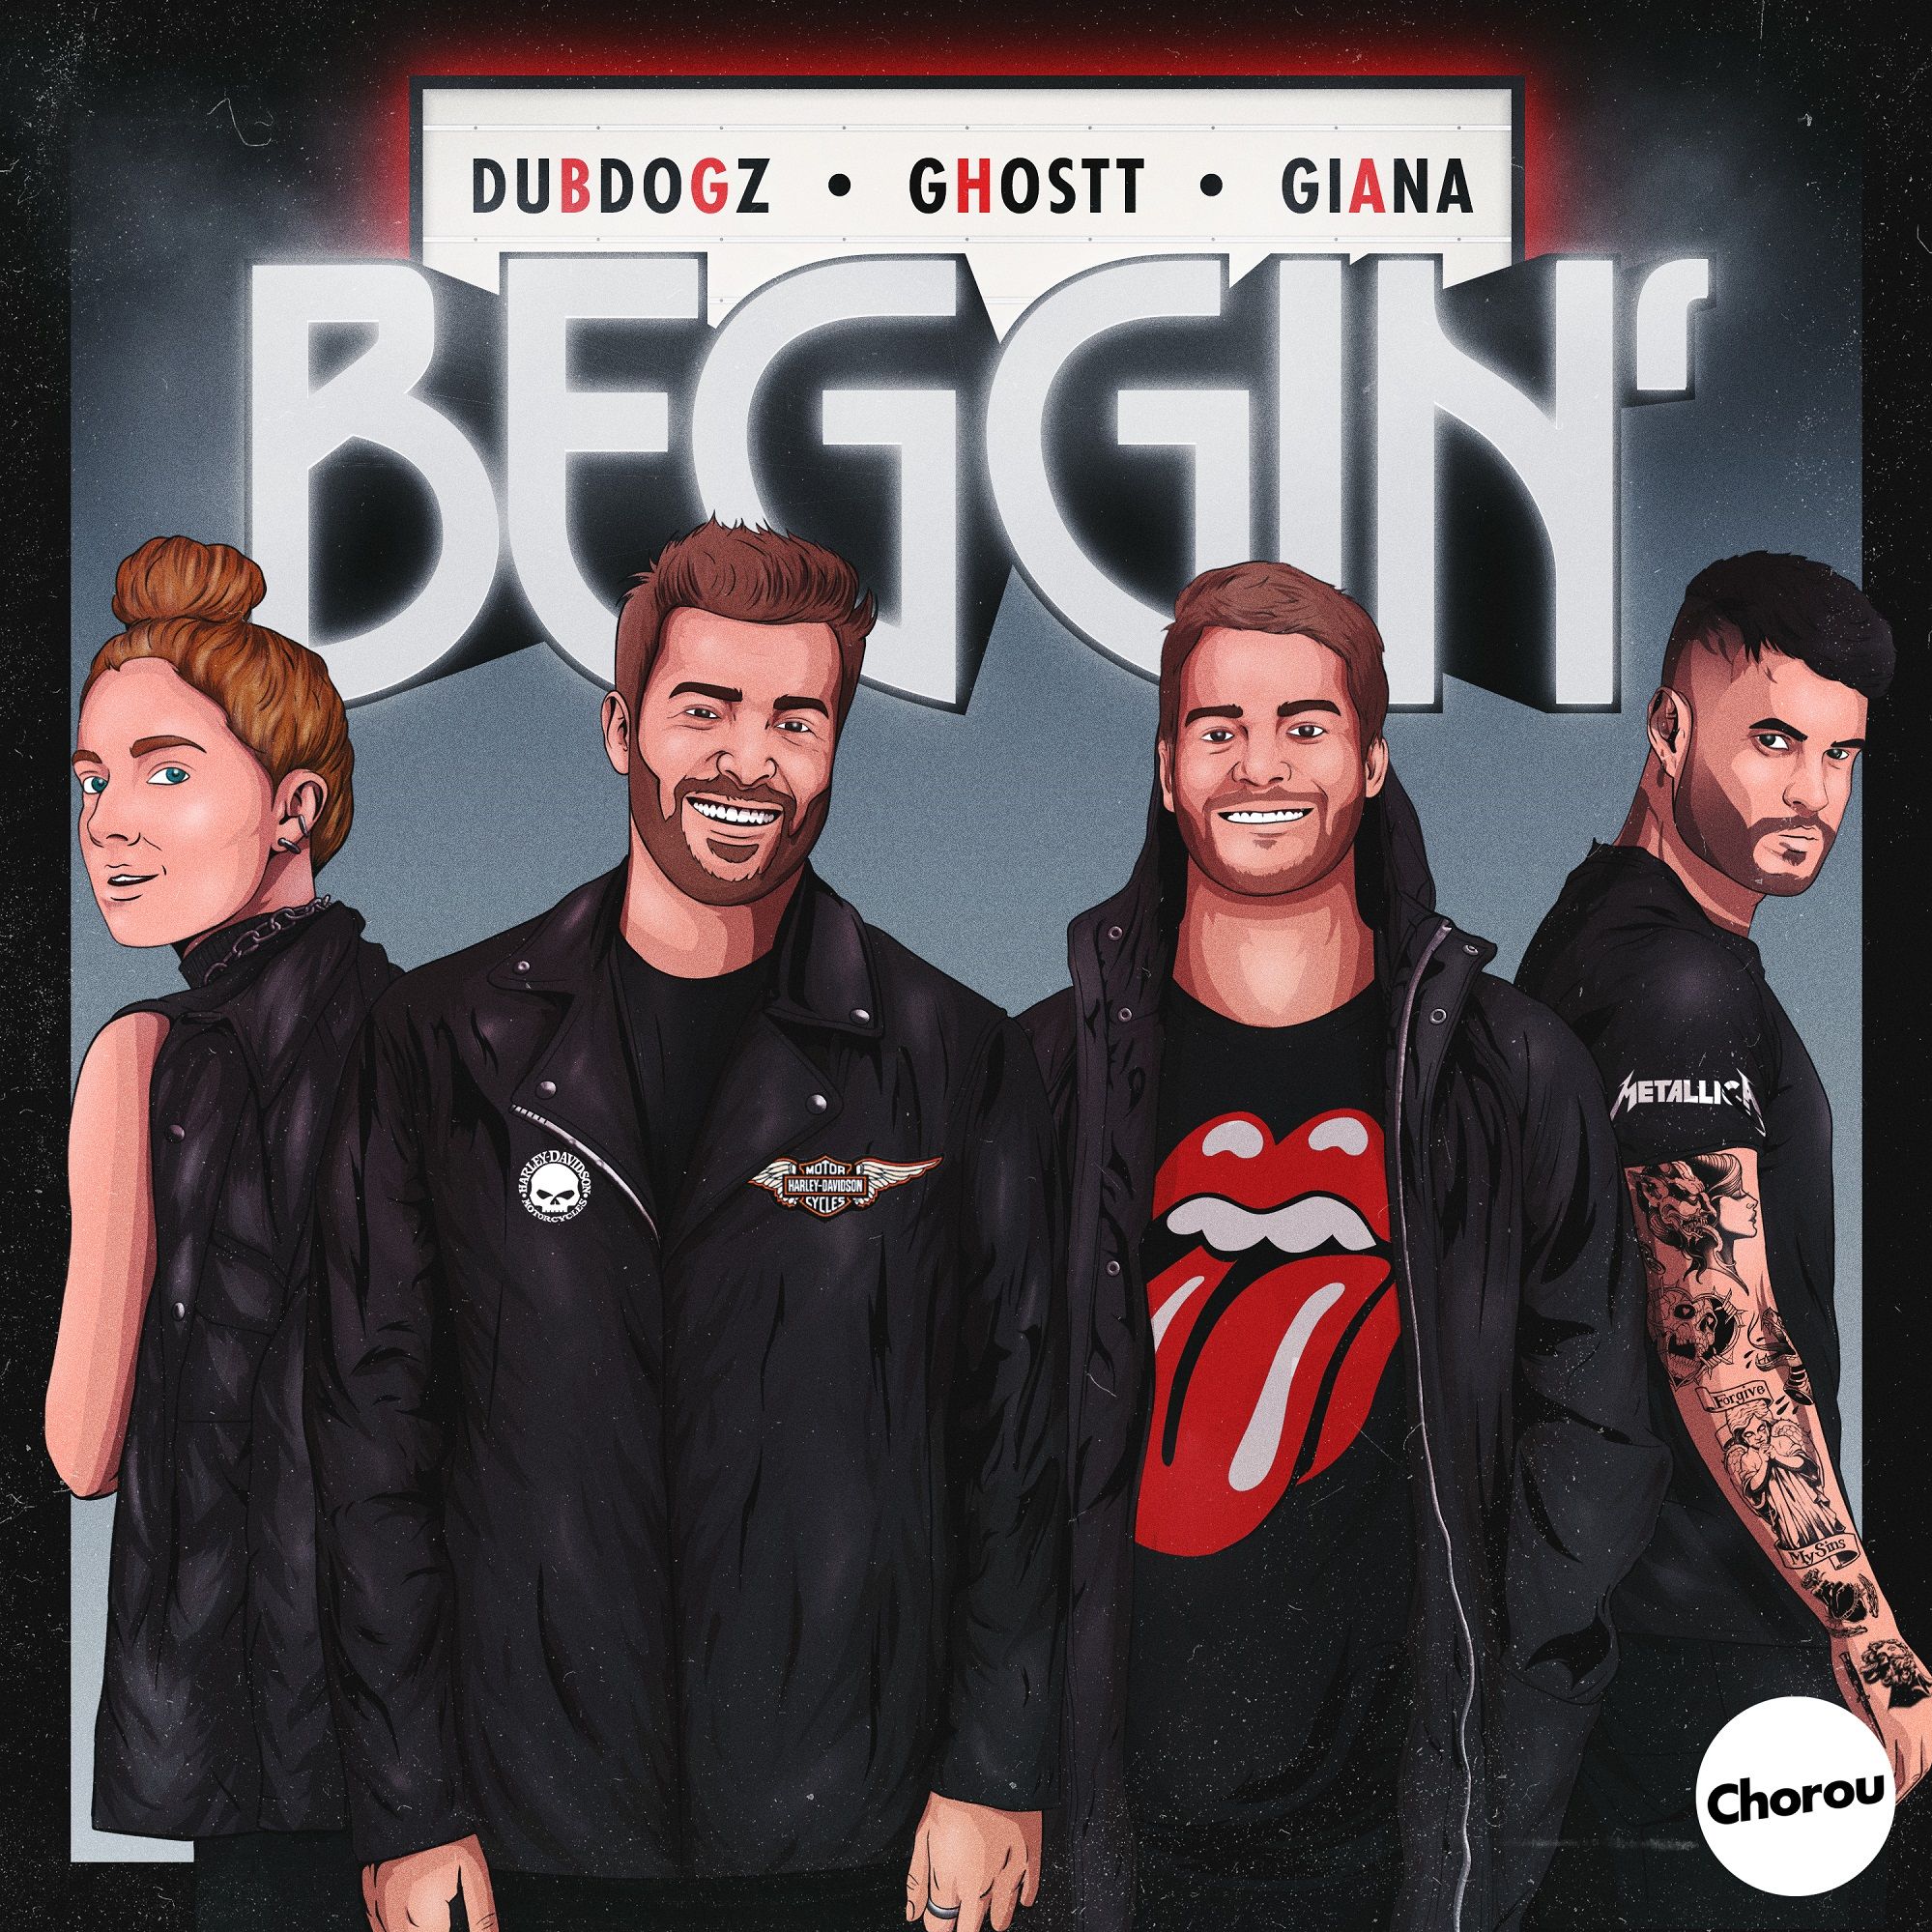 ဒေါင်းလုပ် Dubdogz, Ghostt - Beggin' (feat. Giana) [Chorou Records]